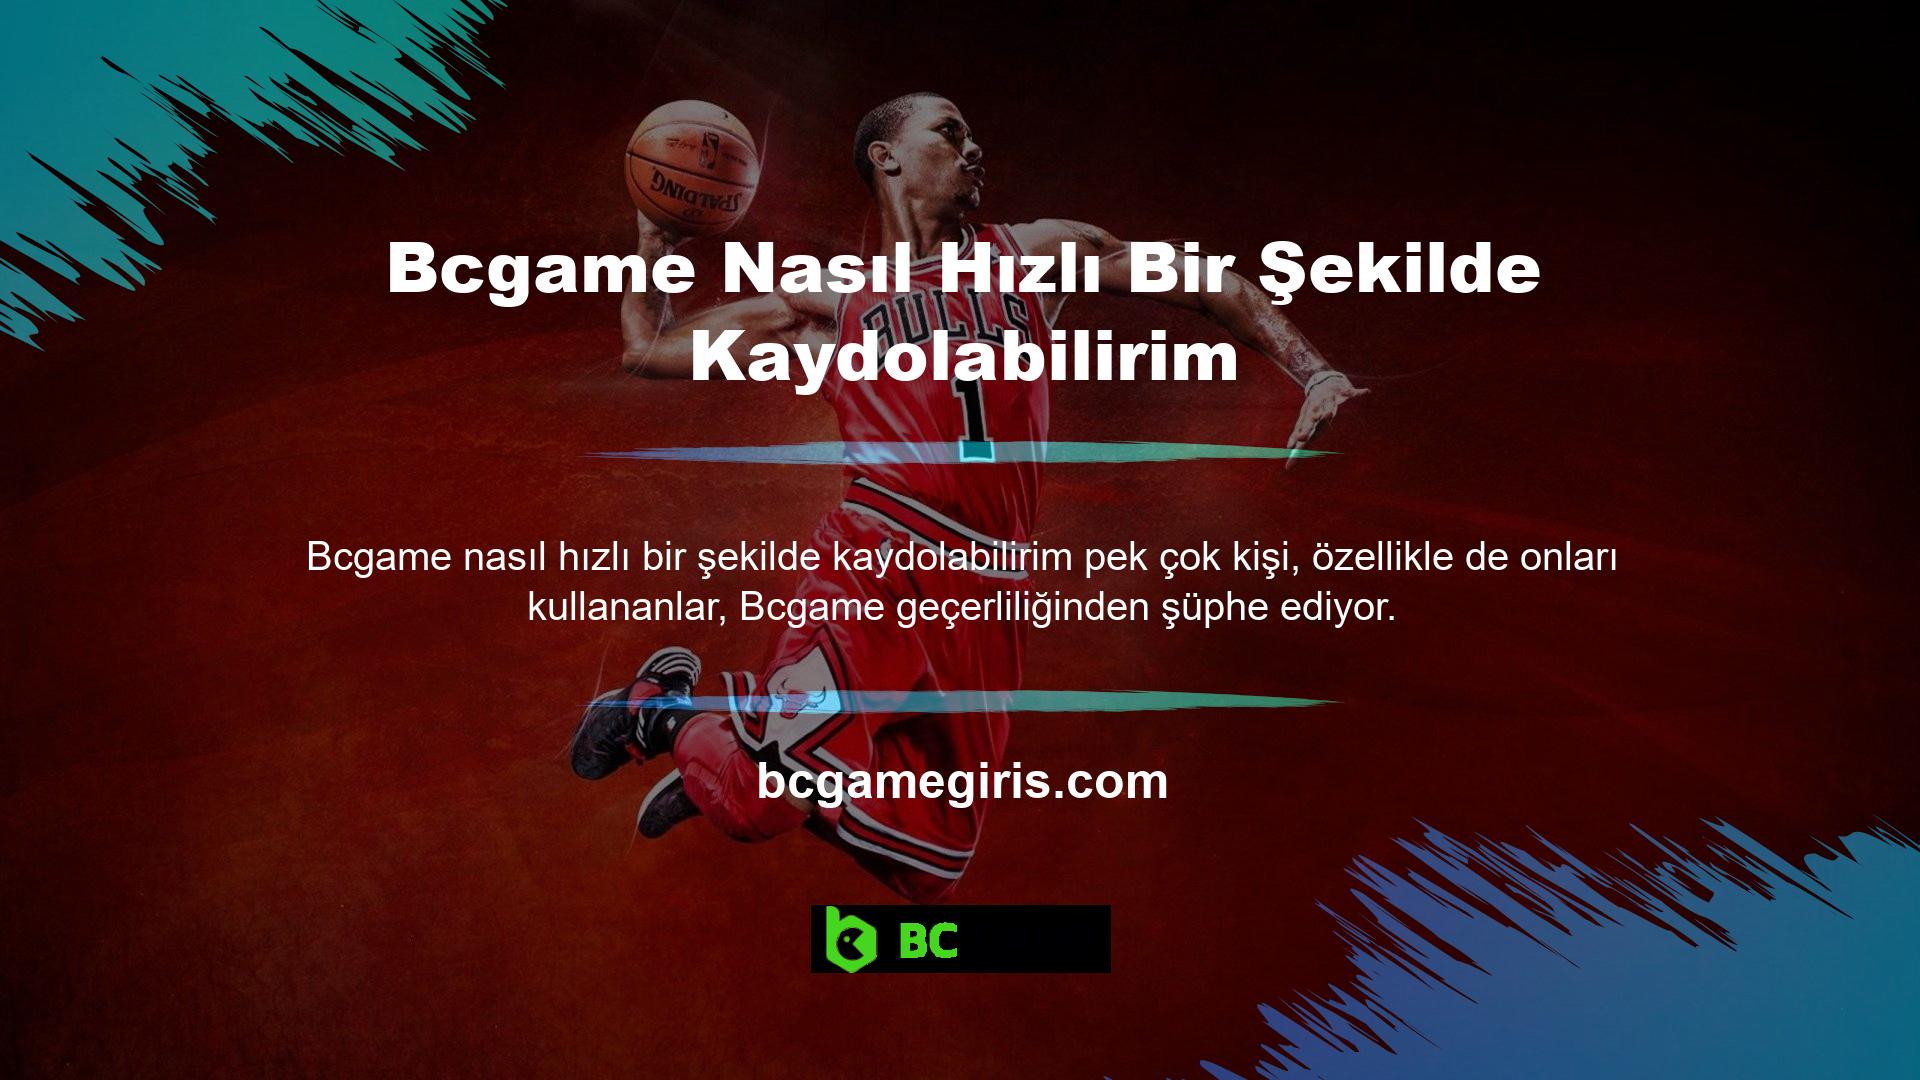 Türkiye’de casino firmalarının çoğunluğu gerekli izinler olmadan faaliyet göstermektedir